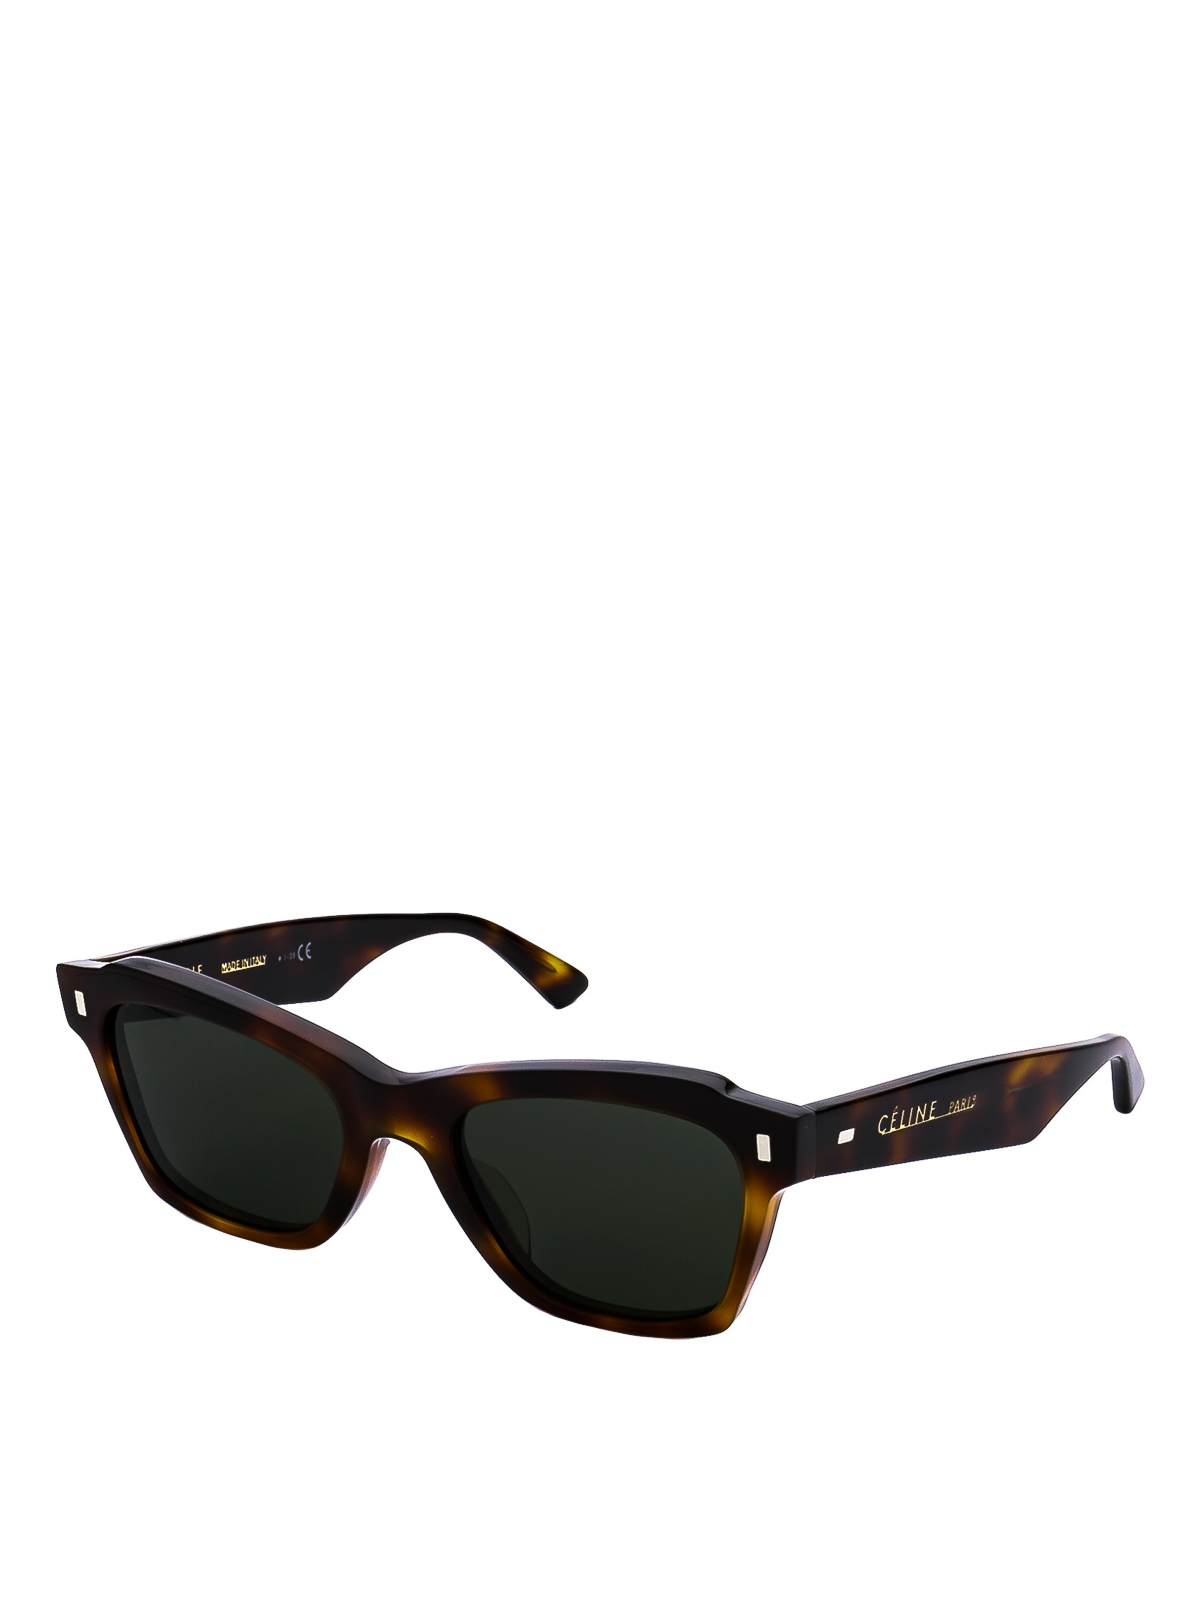 dark wayfarer sunglasses